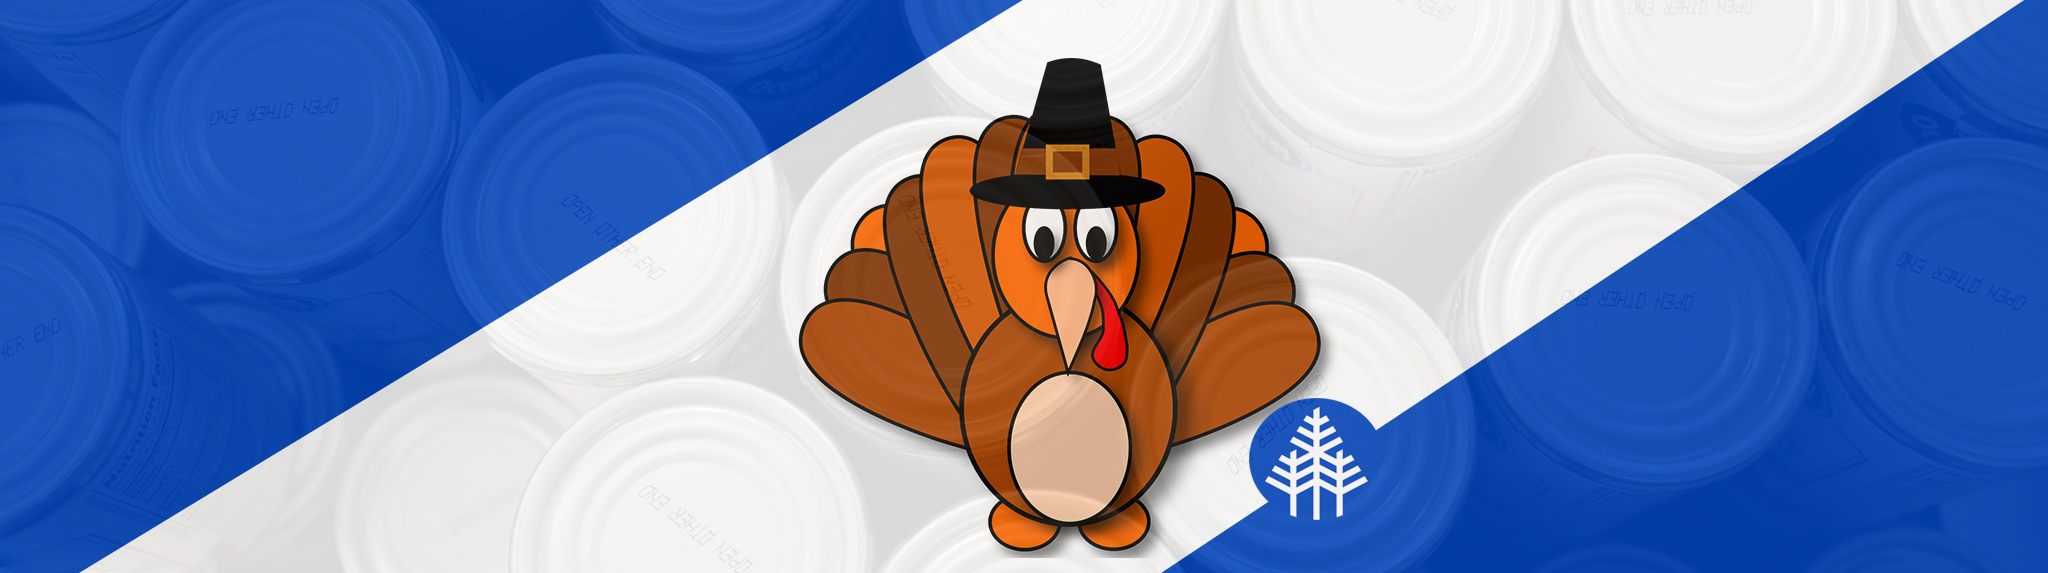 Thanksgiving turkey banner